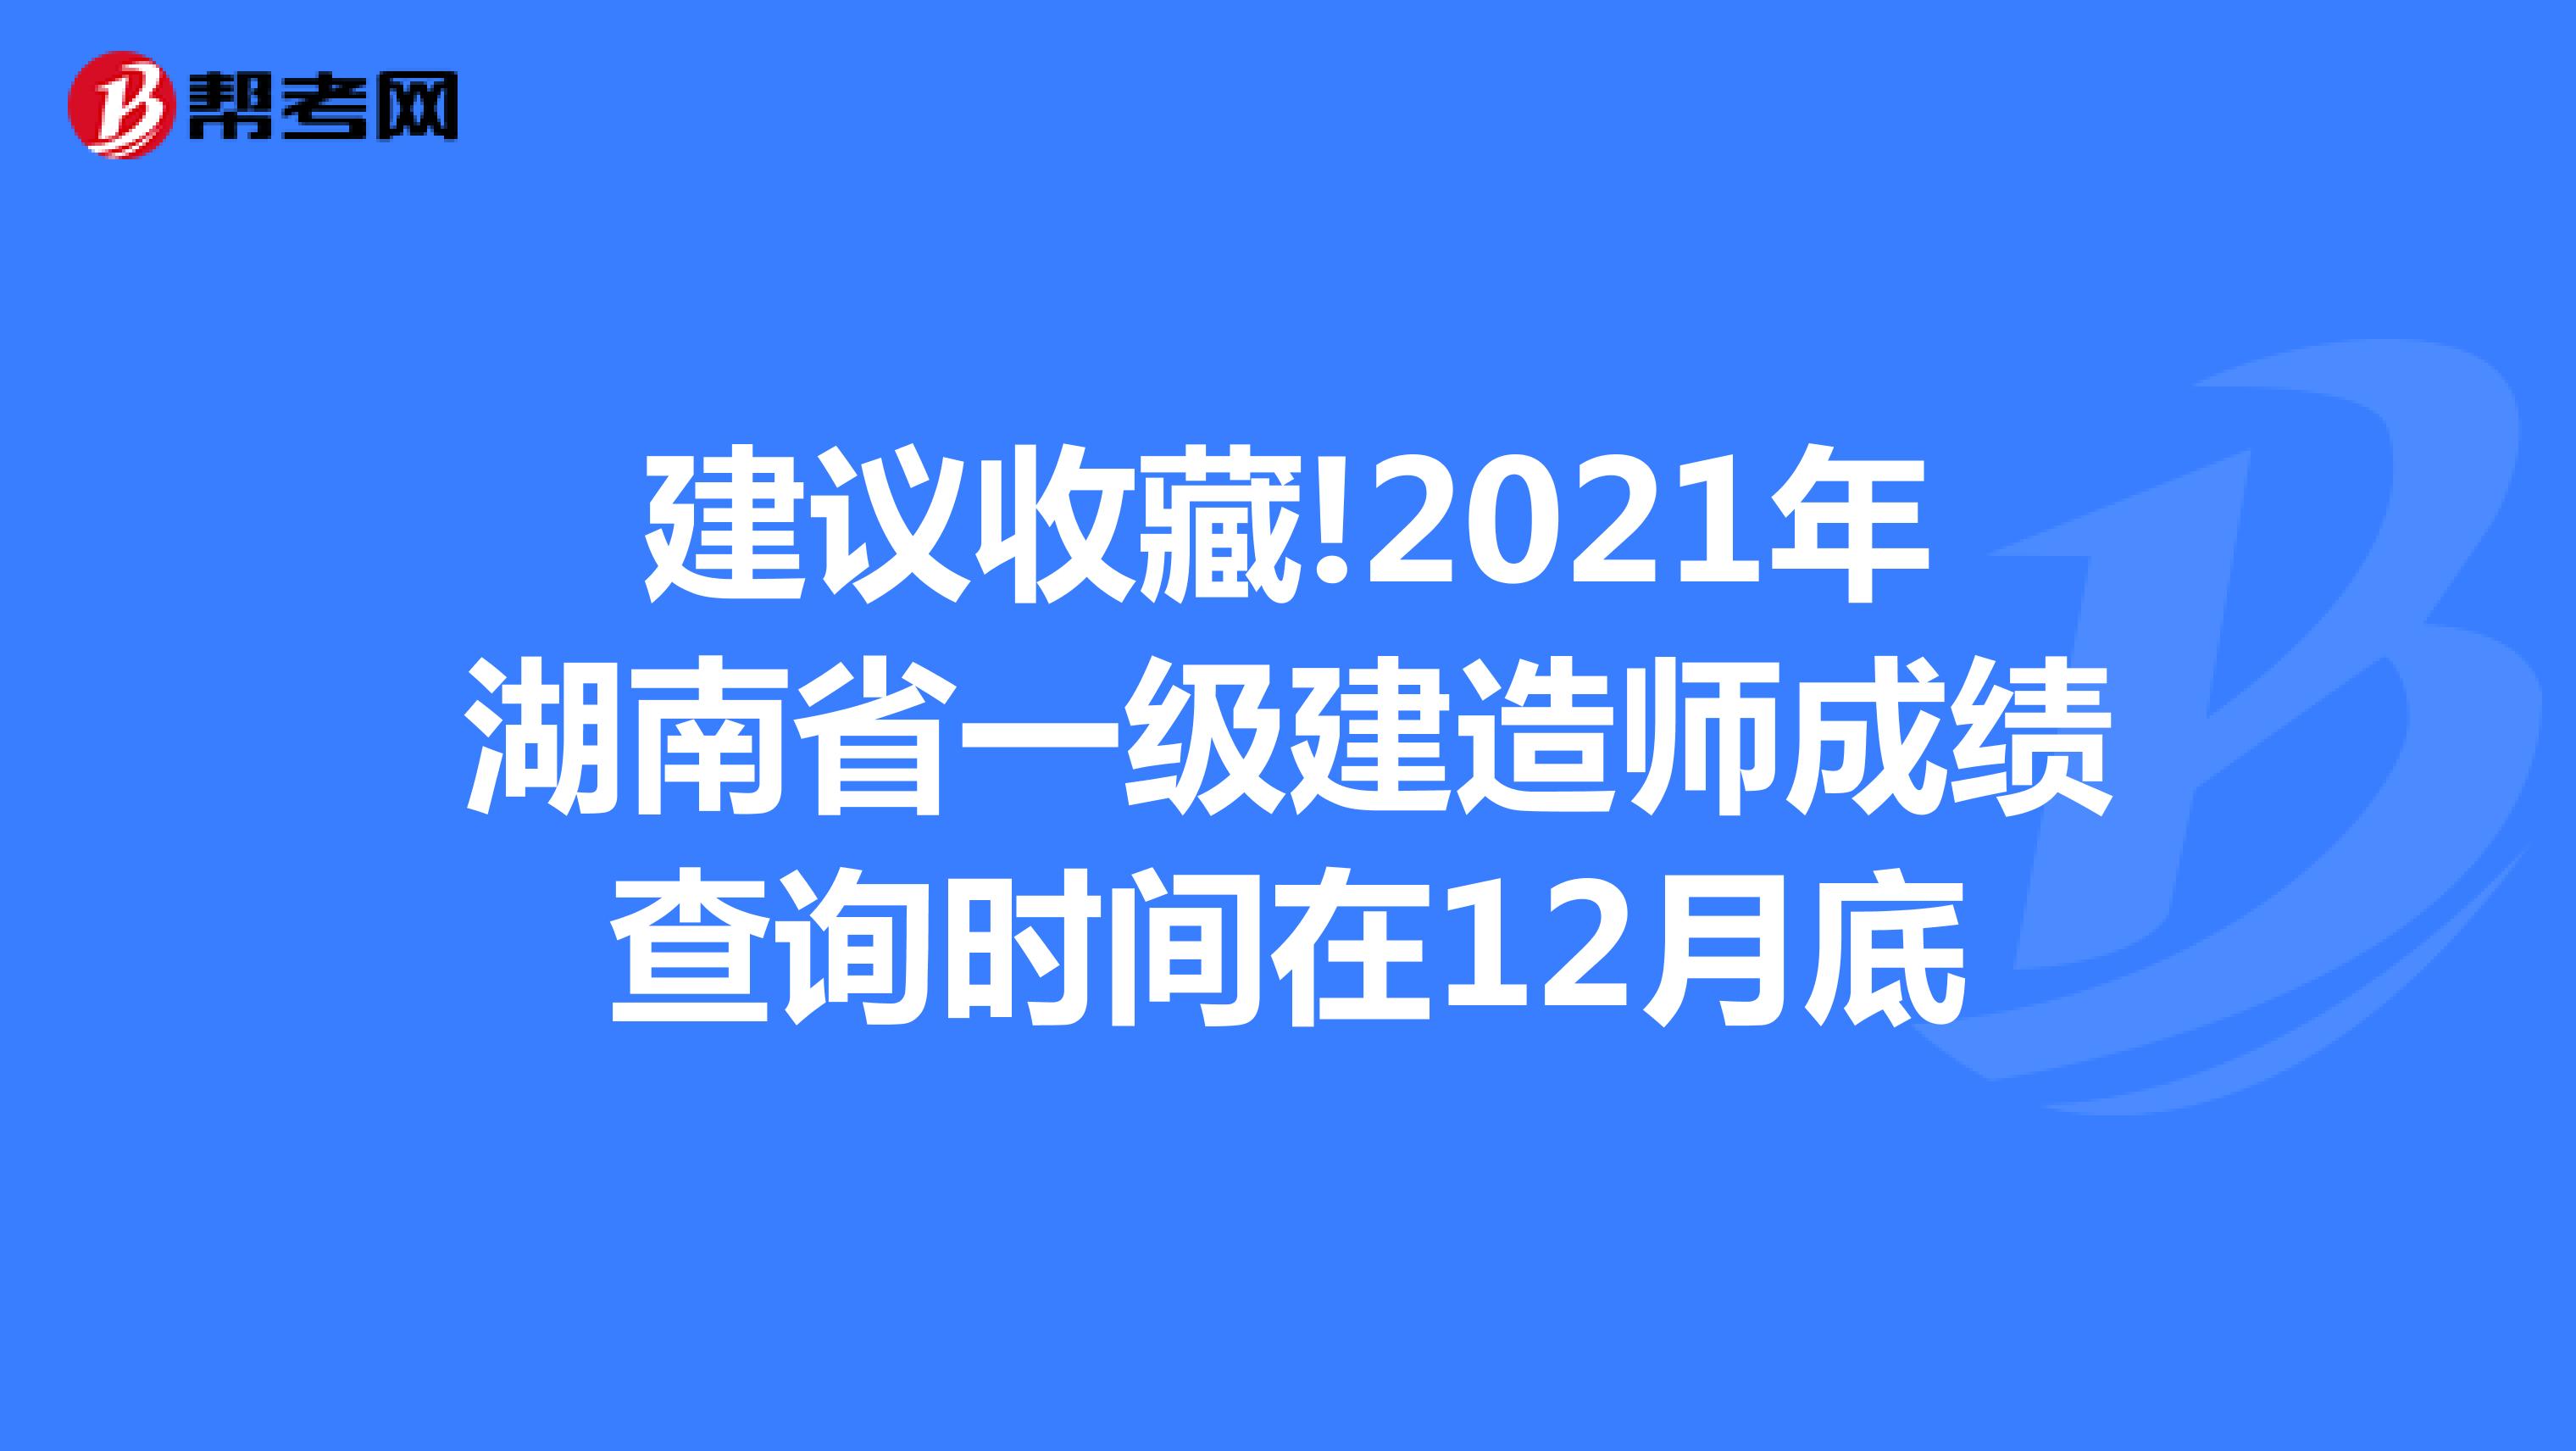 建议收藏!2021年湖南省一级建造师成绩查询时间在12月底